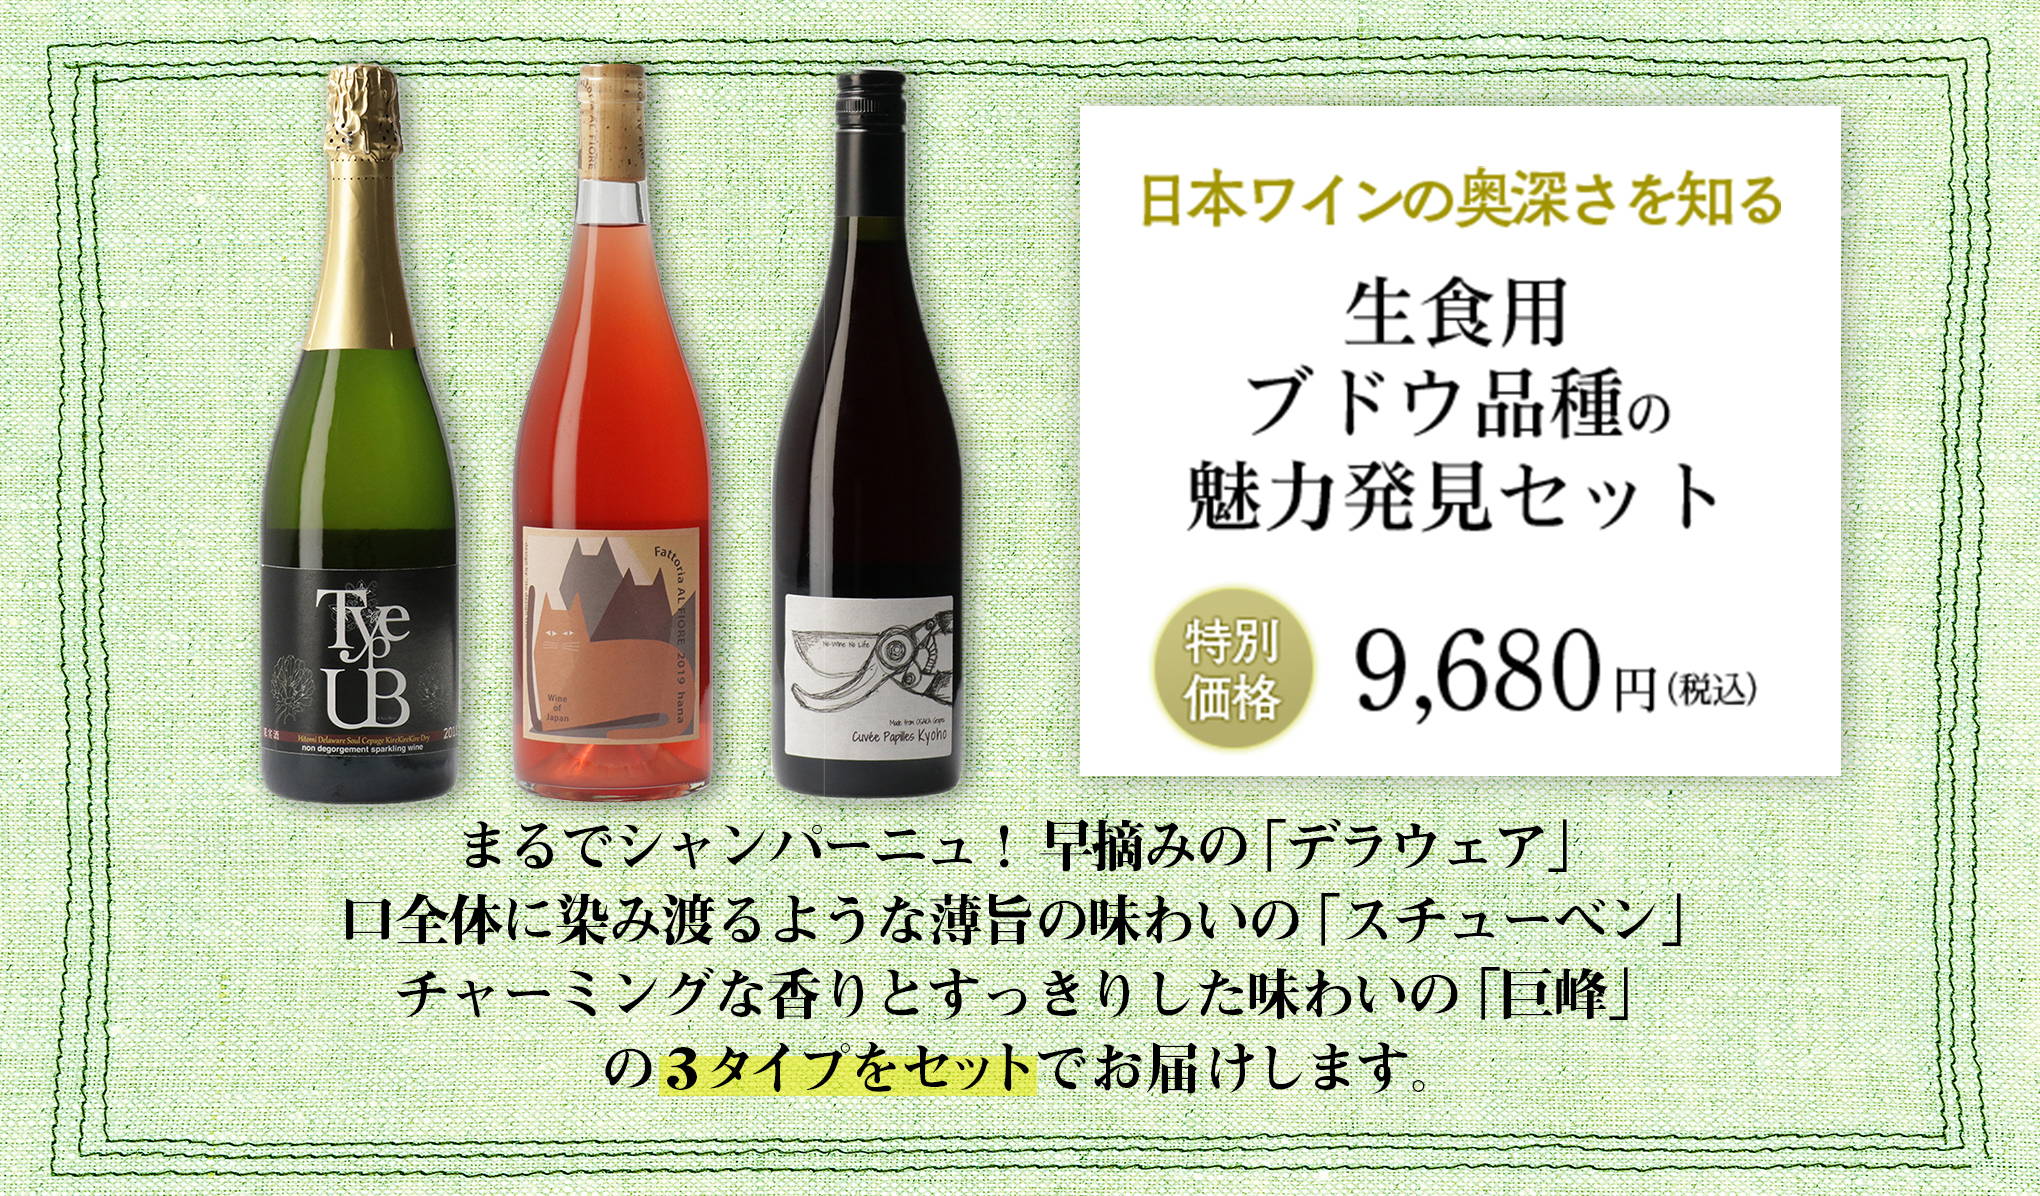 日本ワインを知り尽くしたバイヤーが選ぶ、『wa-syu』限定セット vol.2